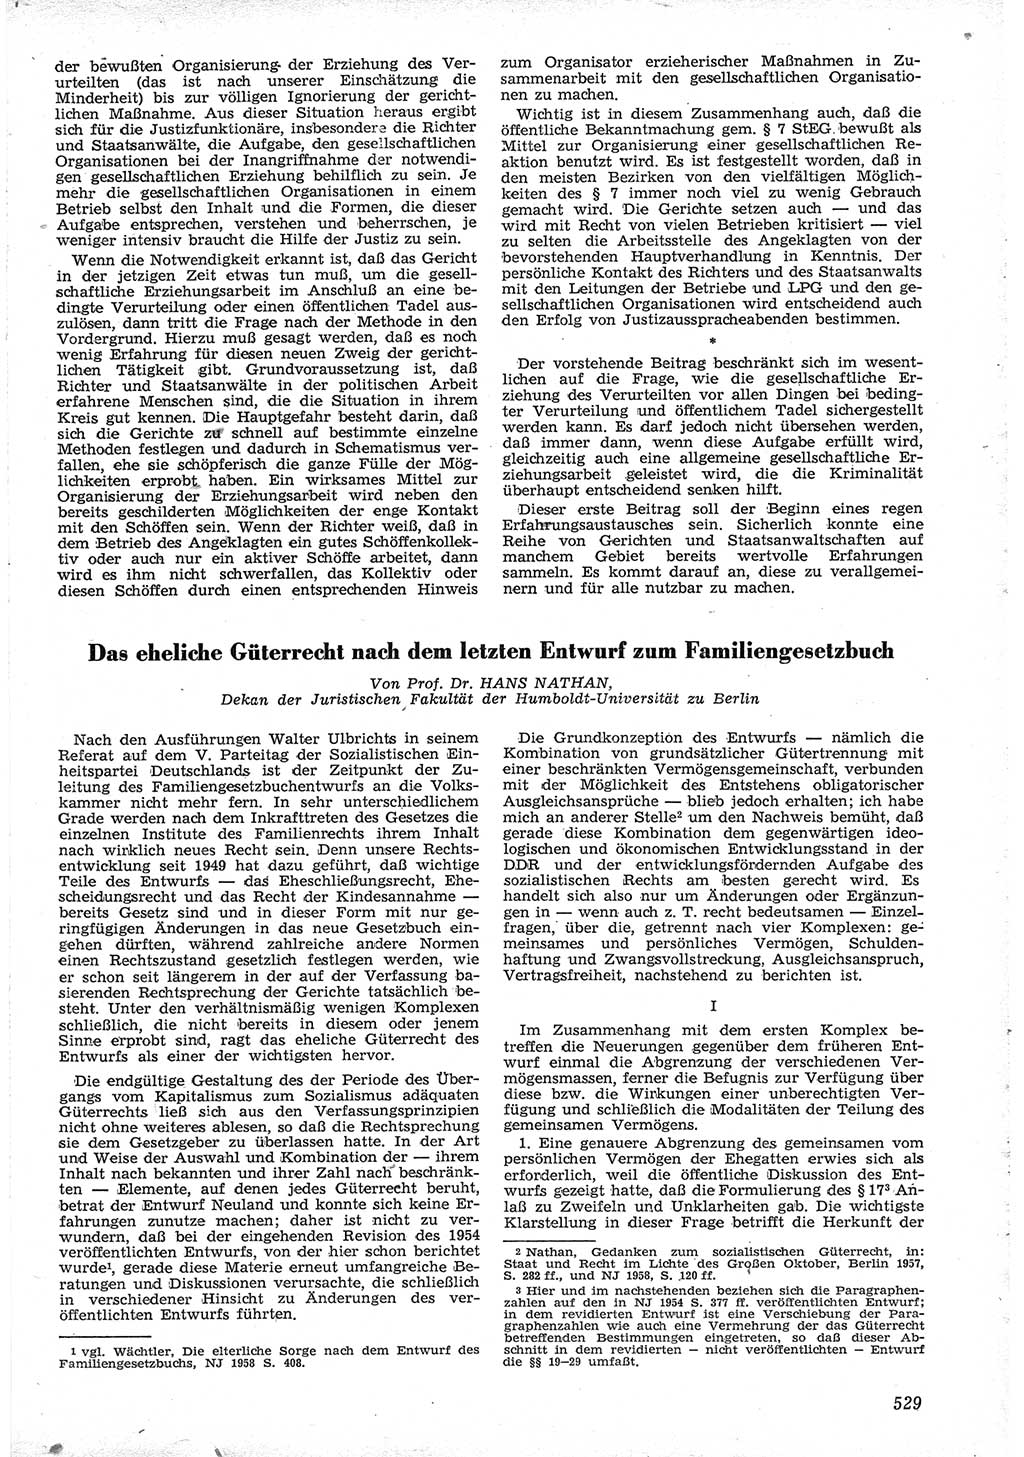 Neue Justiz (NJ), Zeitschrift für Recht und Rechtswissenschaft [Deutsche Demokratische Republik (DDR)], 12. Jahrgang 1958, Seite 529 (NJ DDR 1958, S. 529)